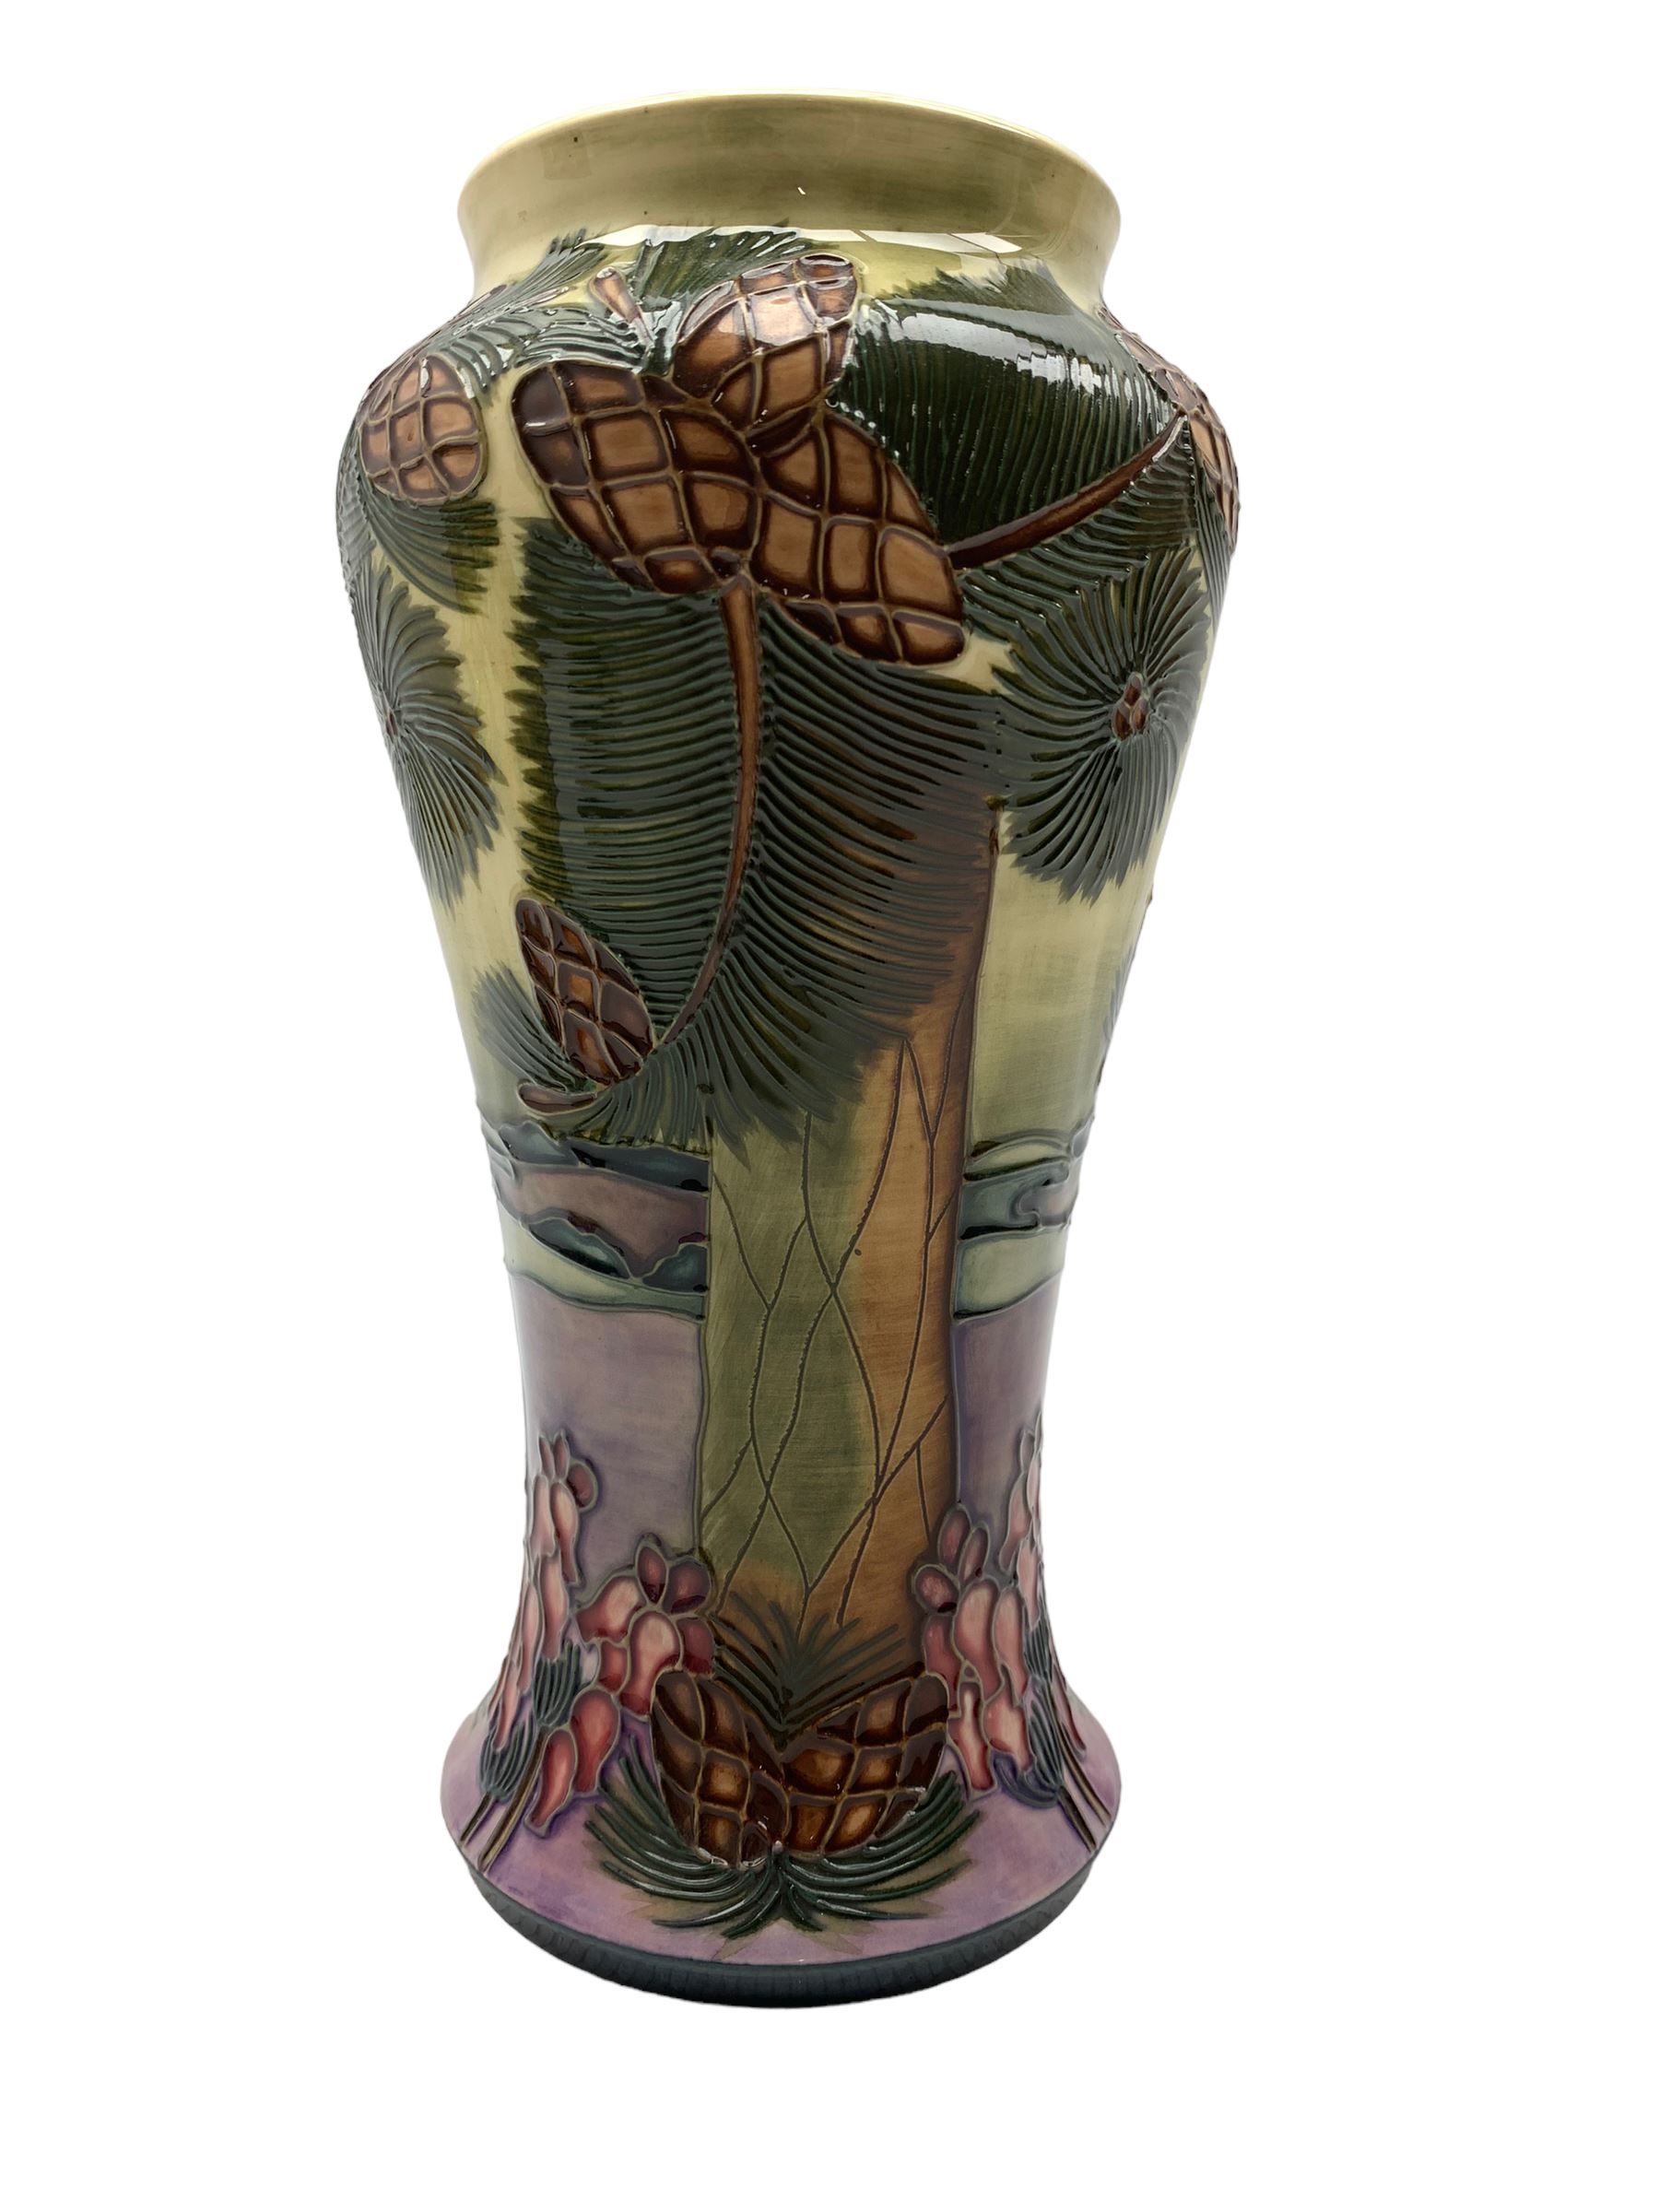 Moorcroft 'Furzey Hill' pattern inverted baluster vase designed by Rachel Bishop